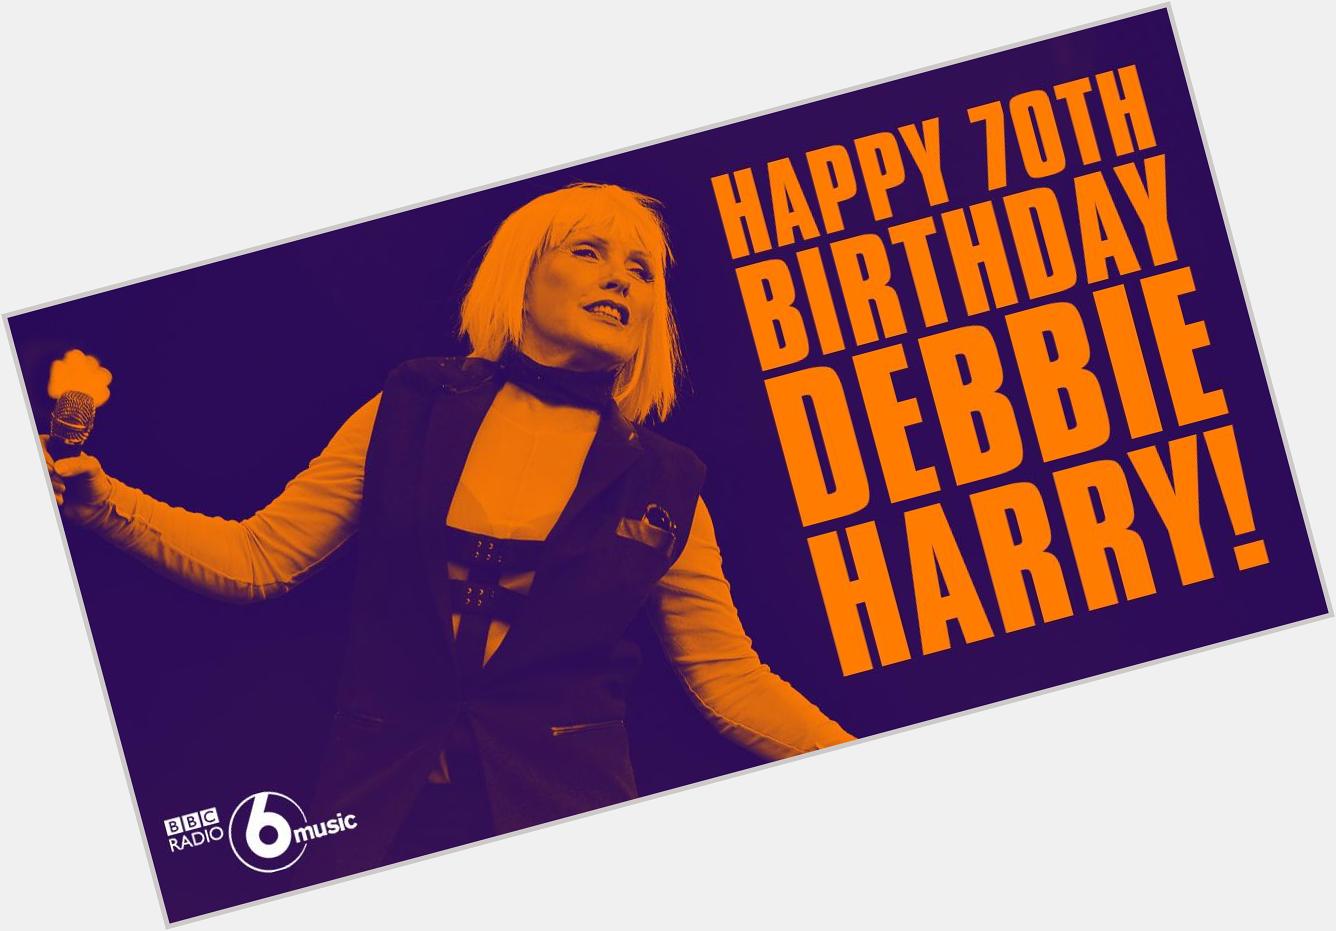 \" Happy Birthday Debbie Harry! 